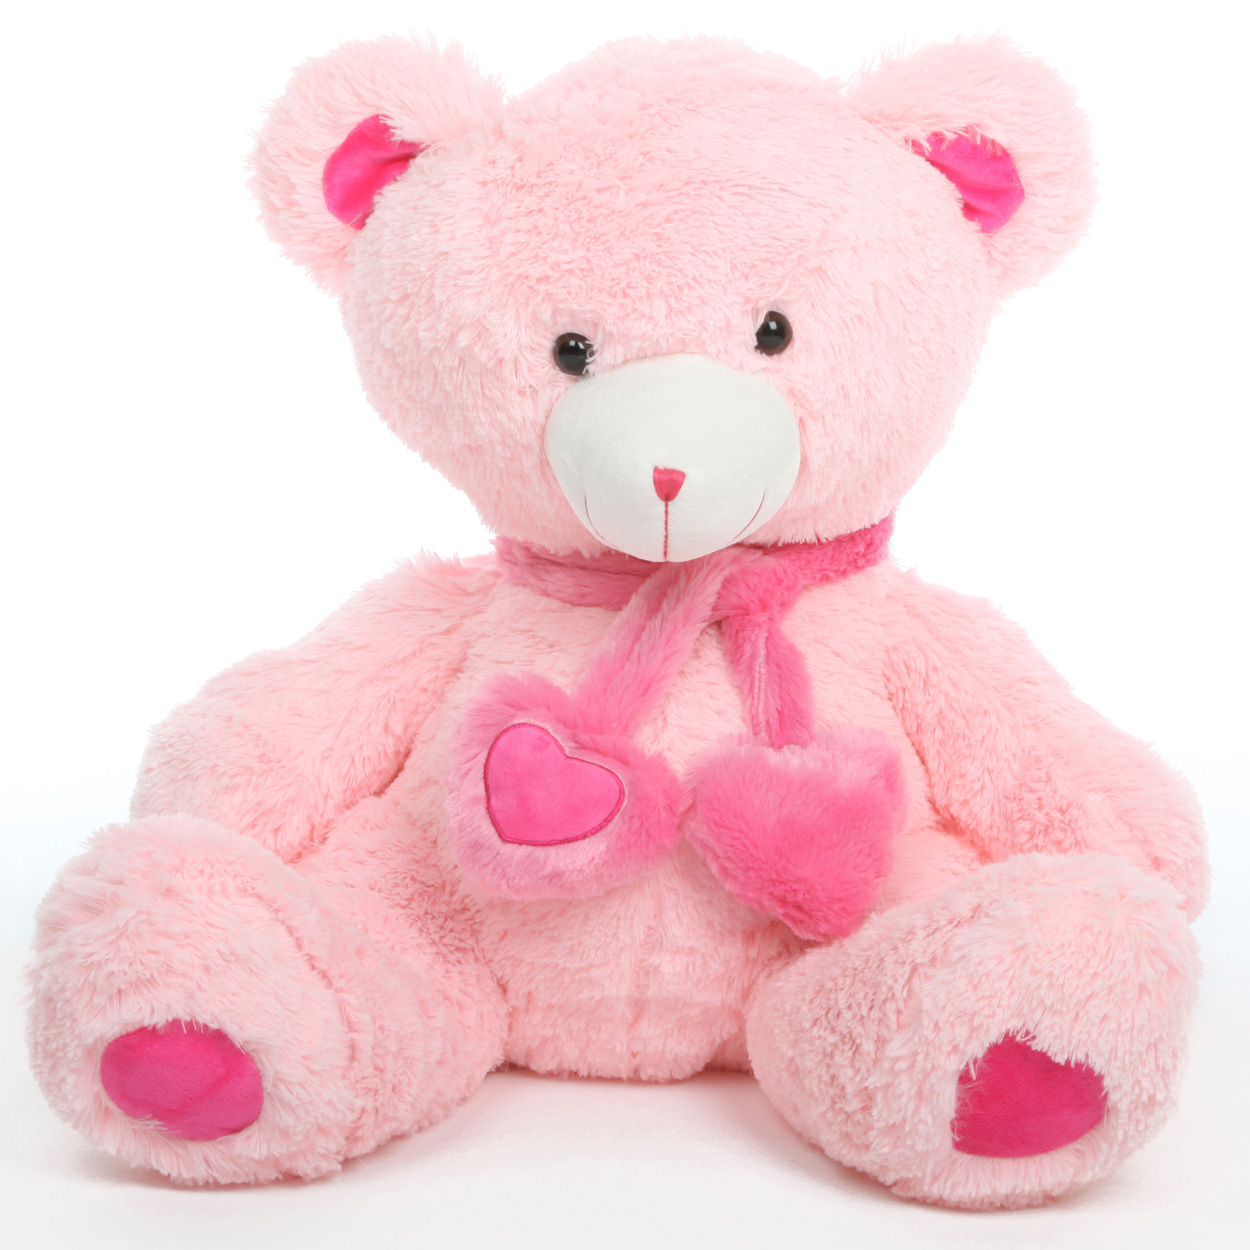 Candy Hugs Adorable Plush Stuffed Teddy Bear Giant Bears